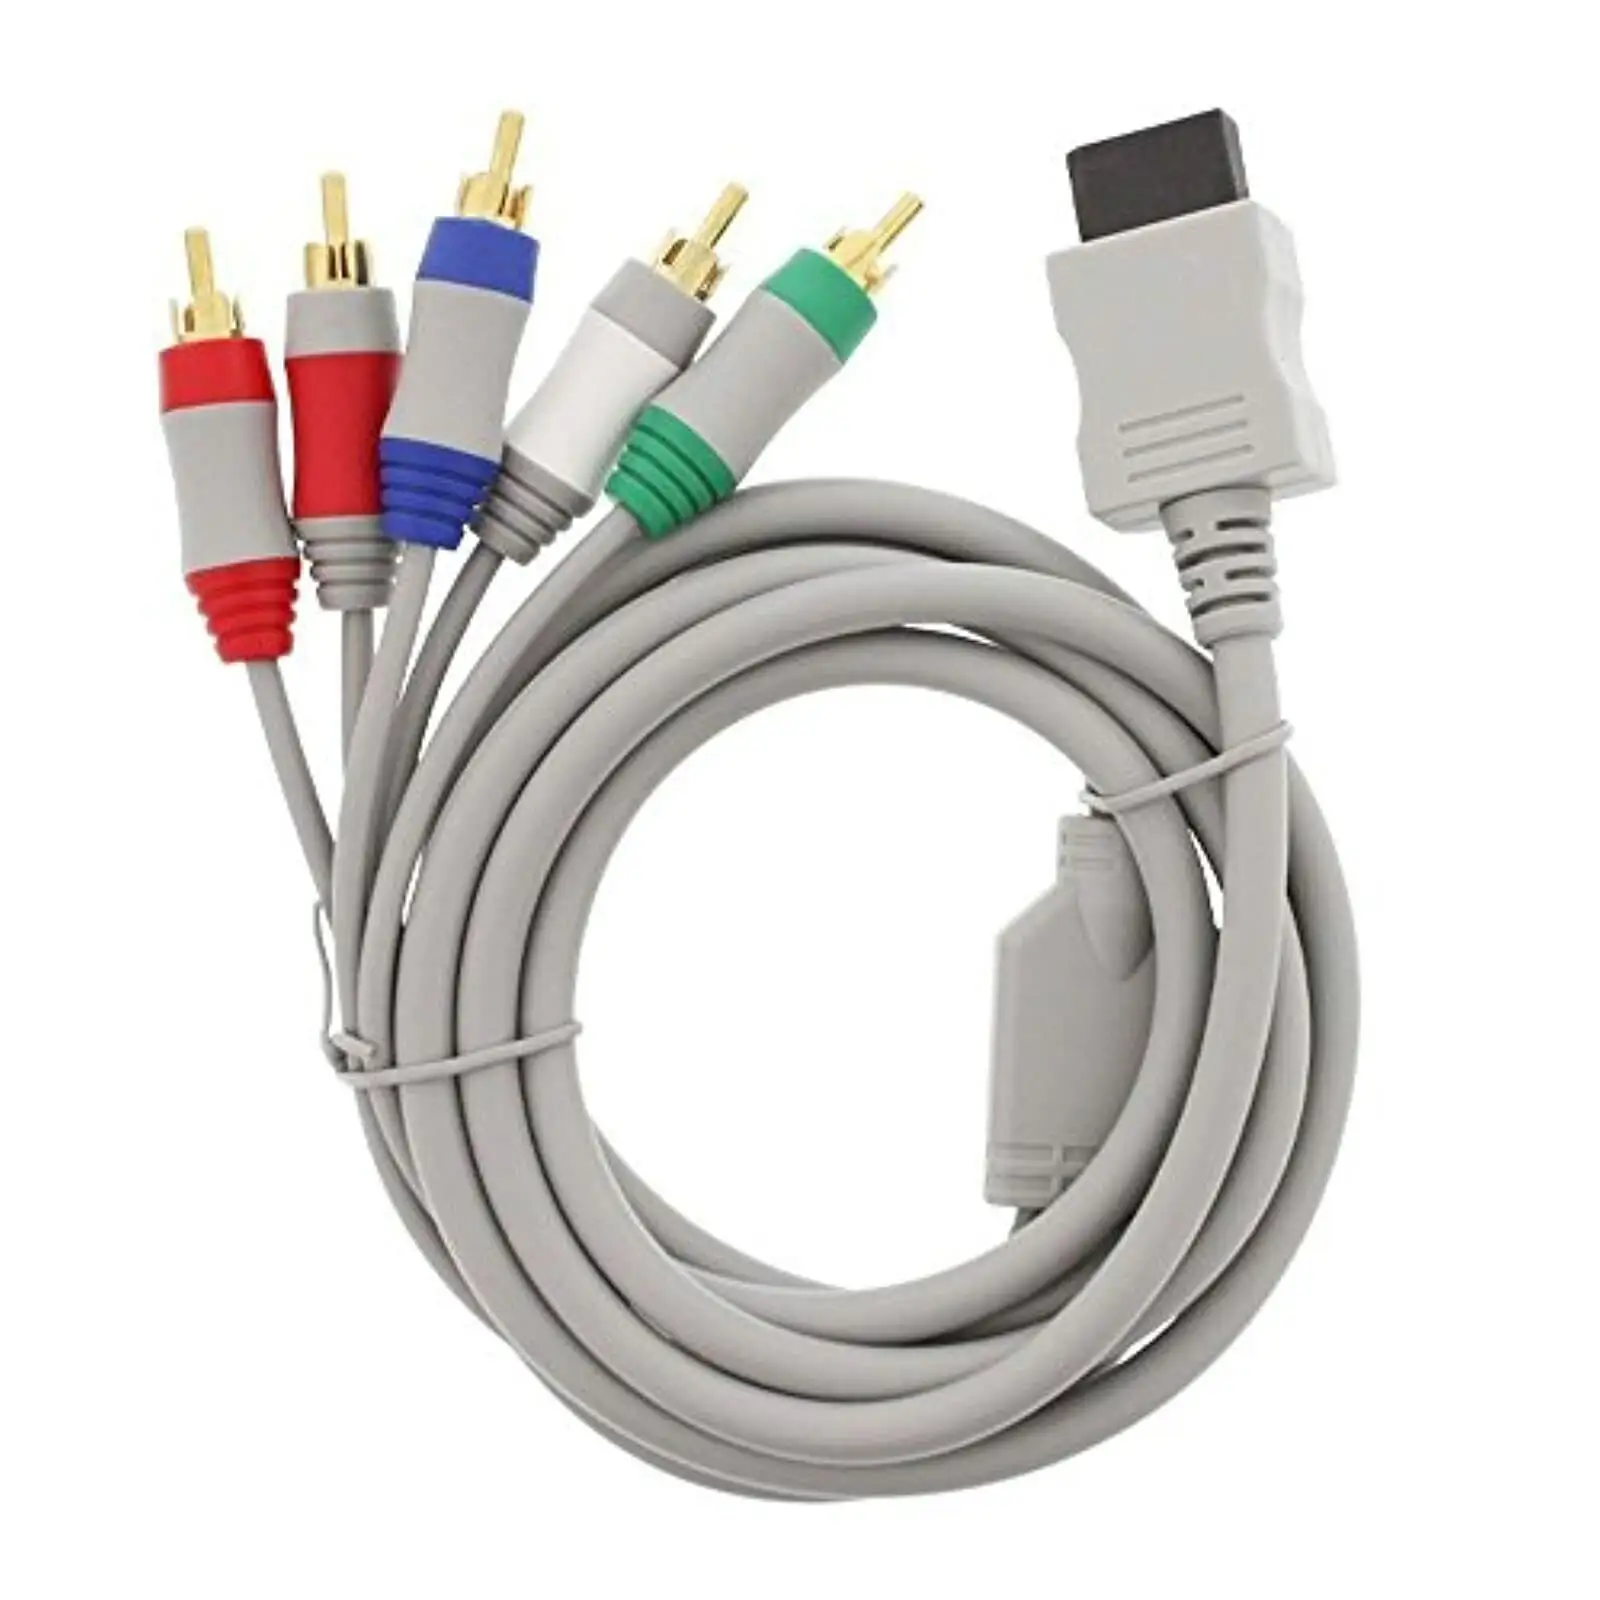 Cordon de câble AV Audio vidéo composite pour Wii/Wii U/PS2/PS3/PS5/Xbox 360 câble de cordon composant RCA HD TV mince